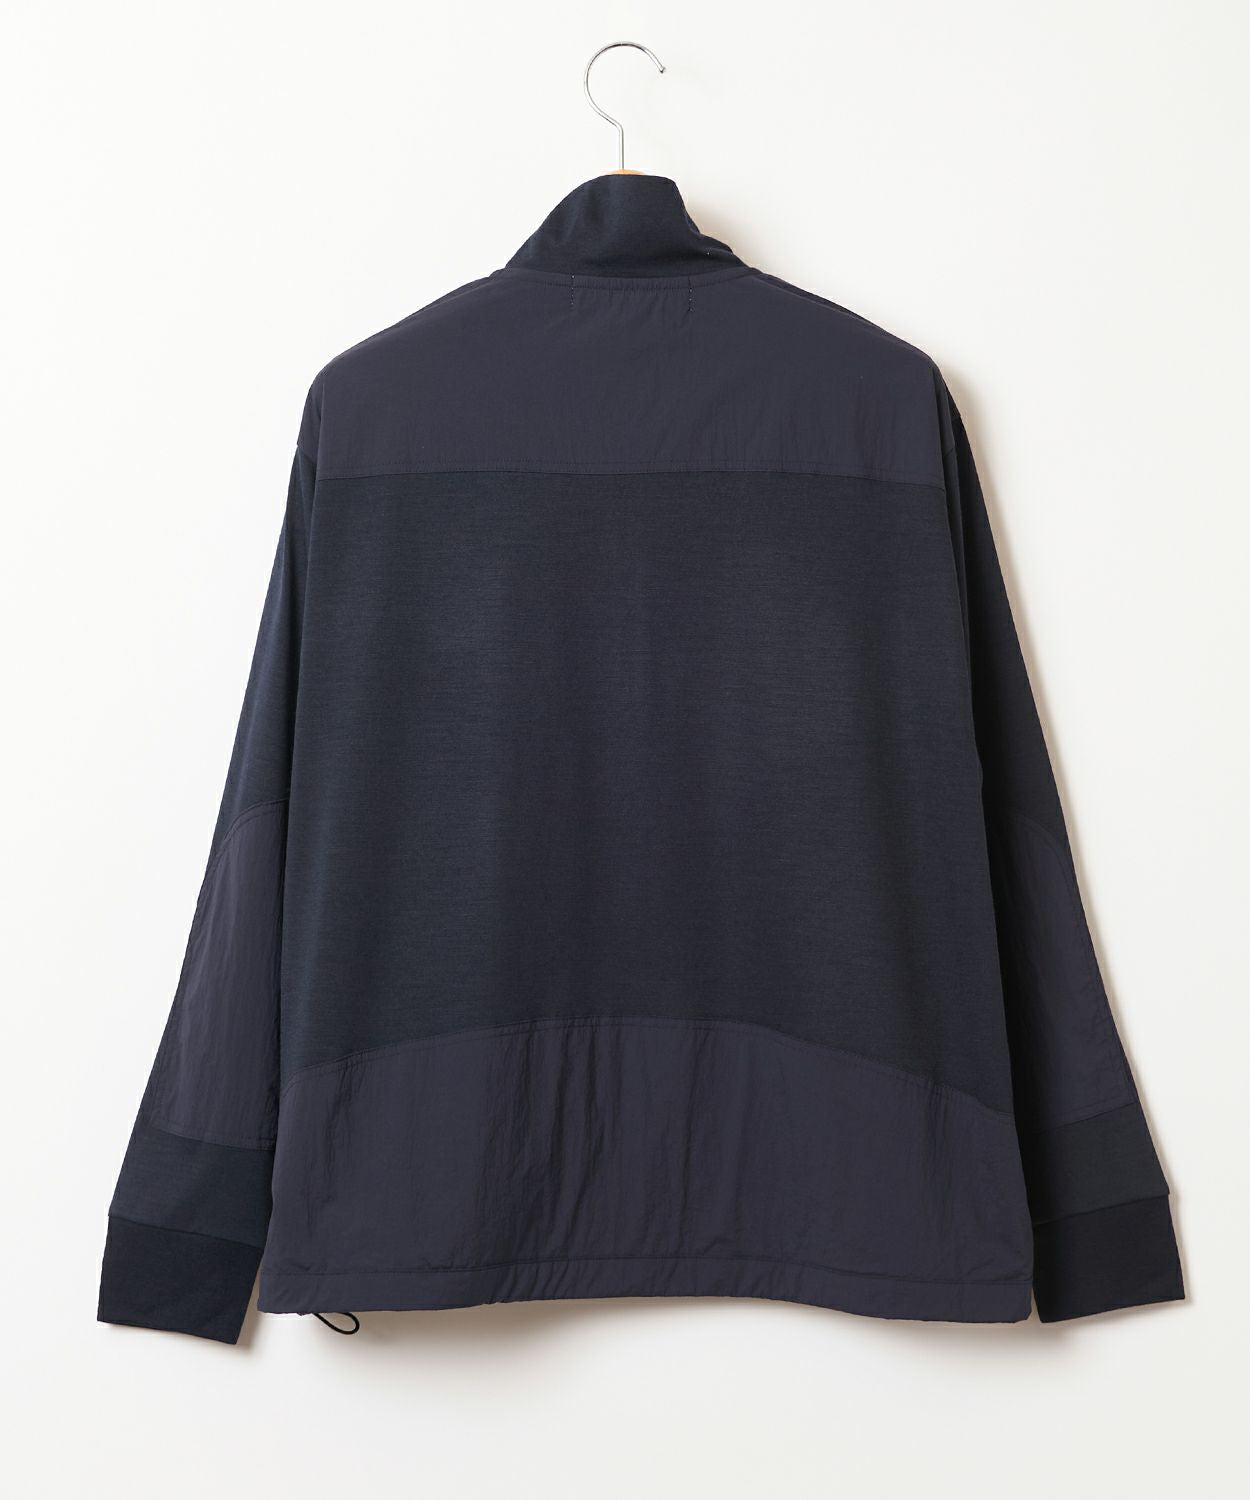 Merino Wool Half Zip Sweater